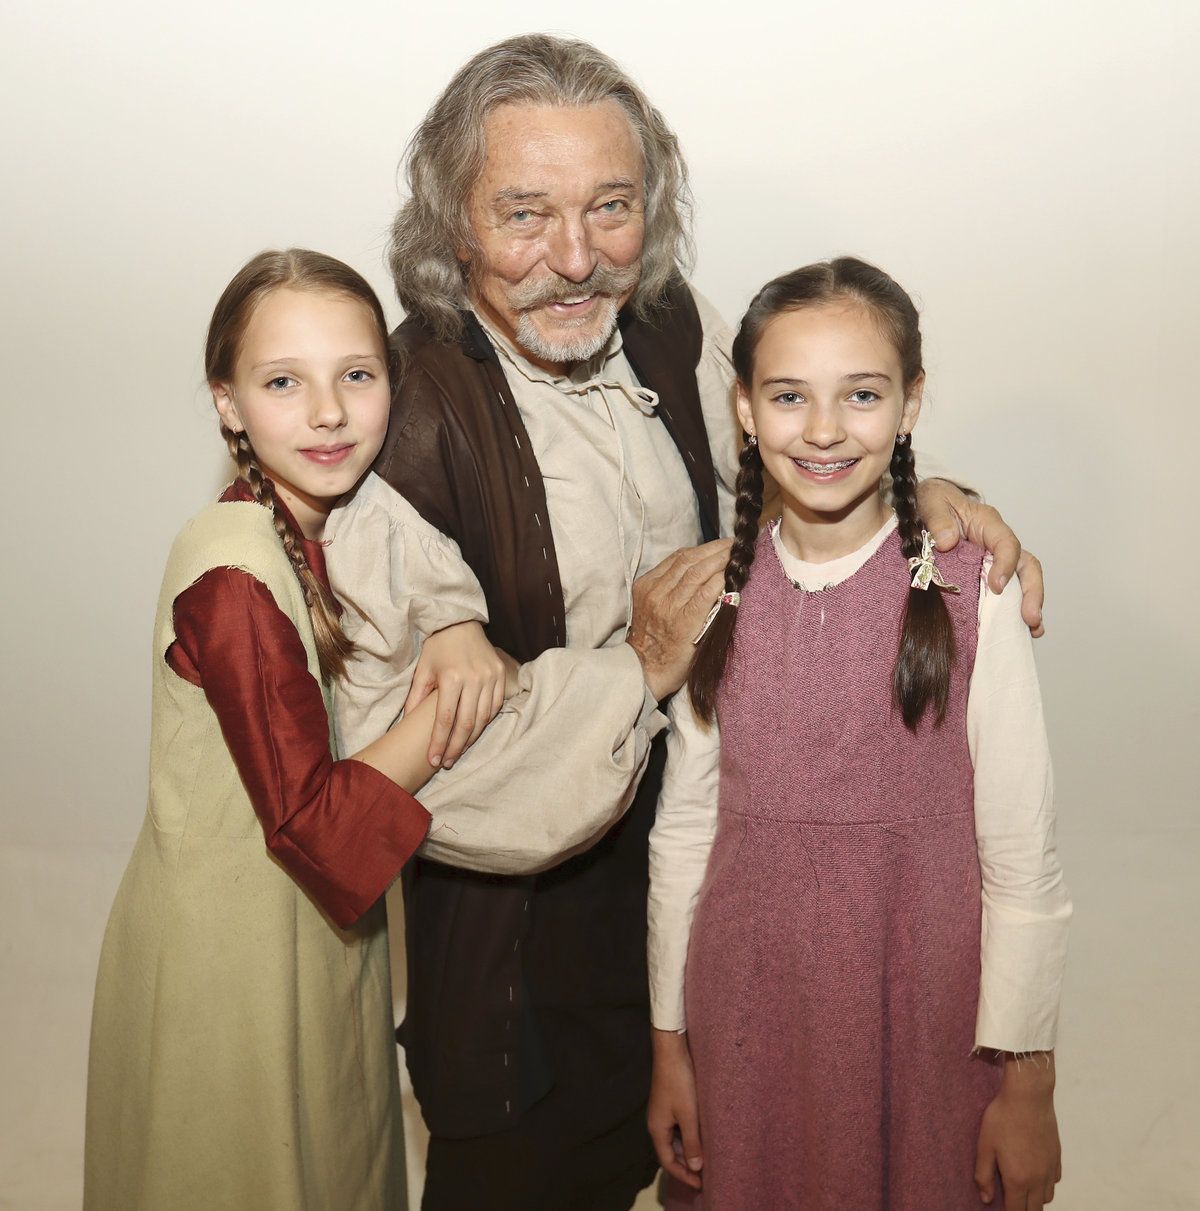 Karel Gott s dcerami při natáčení nové pohádky Když draka bolí hava.